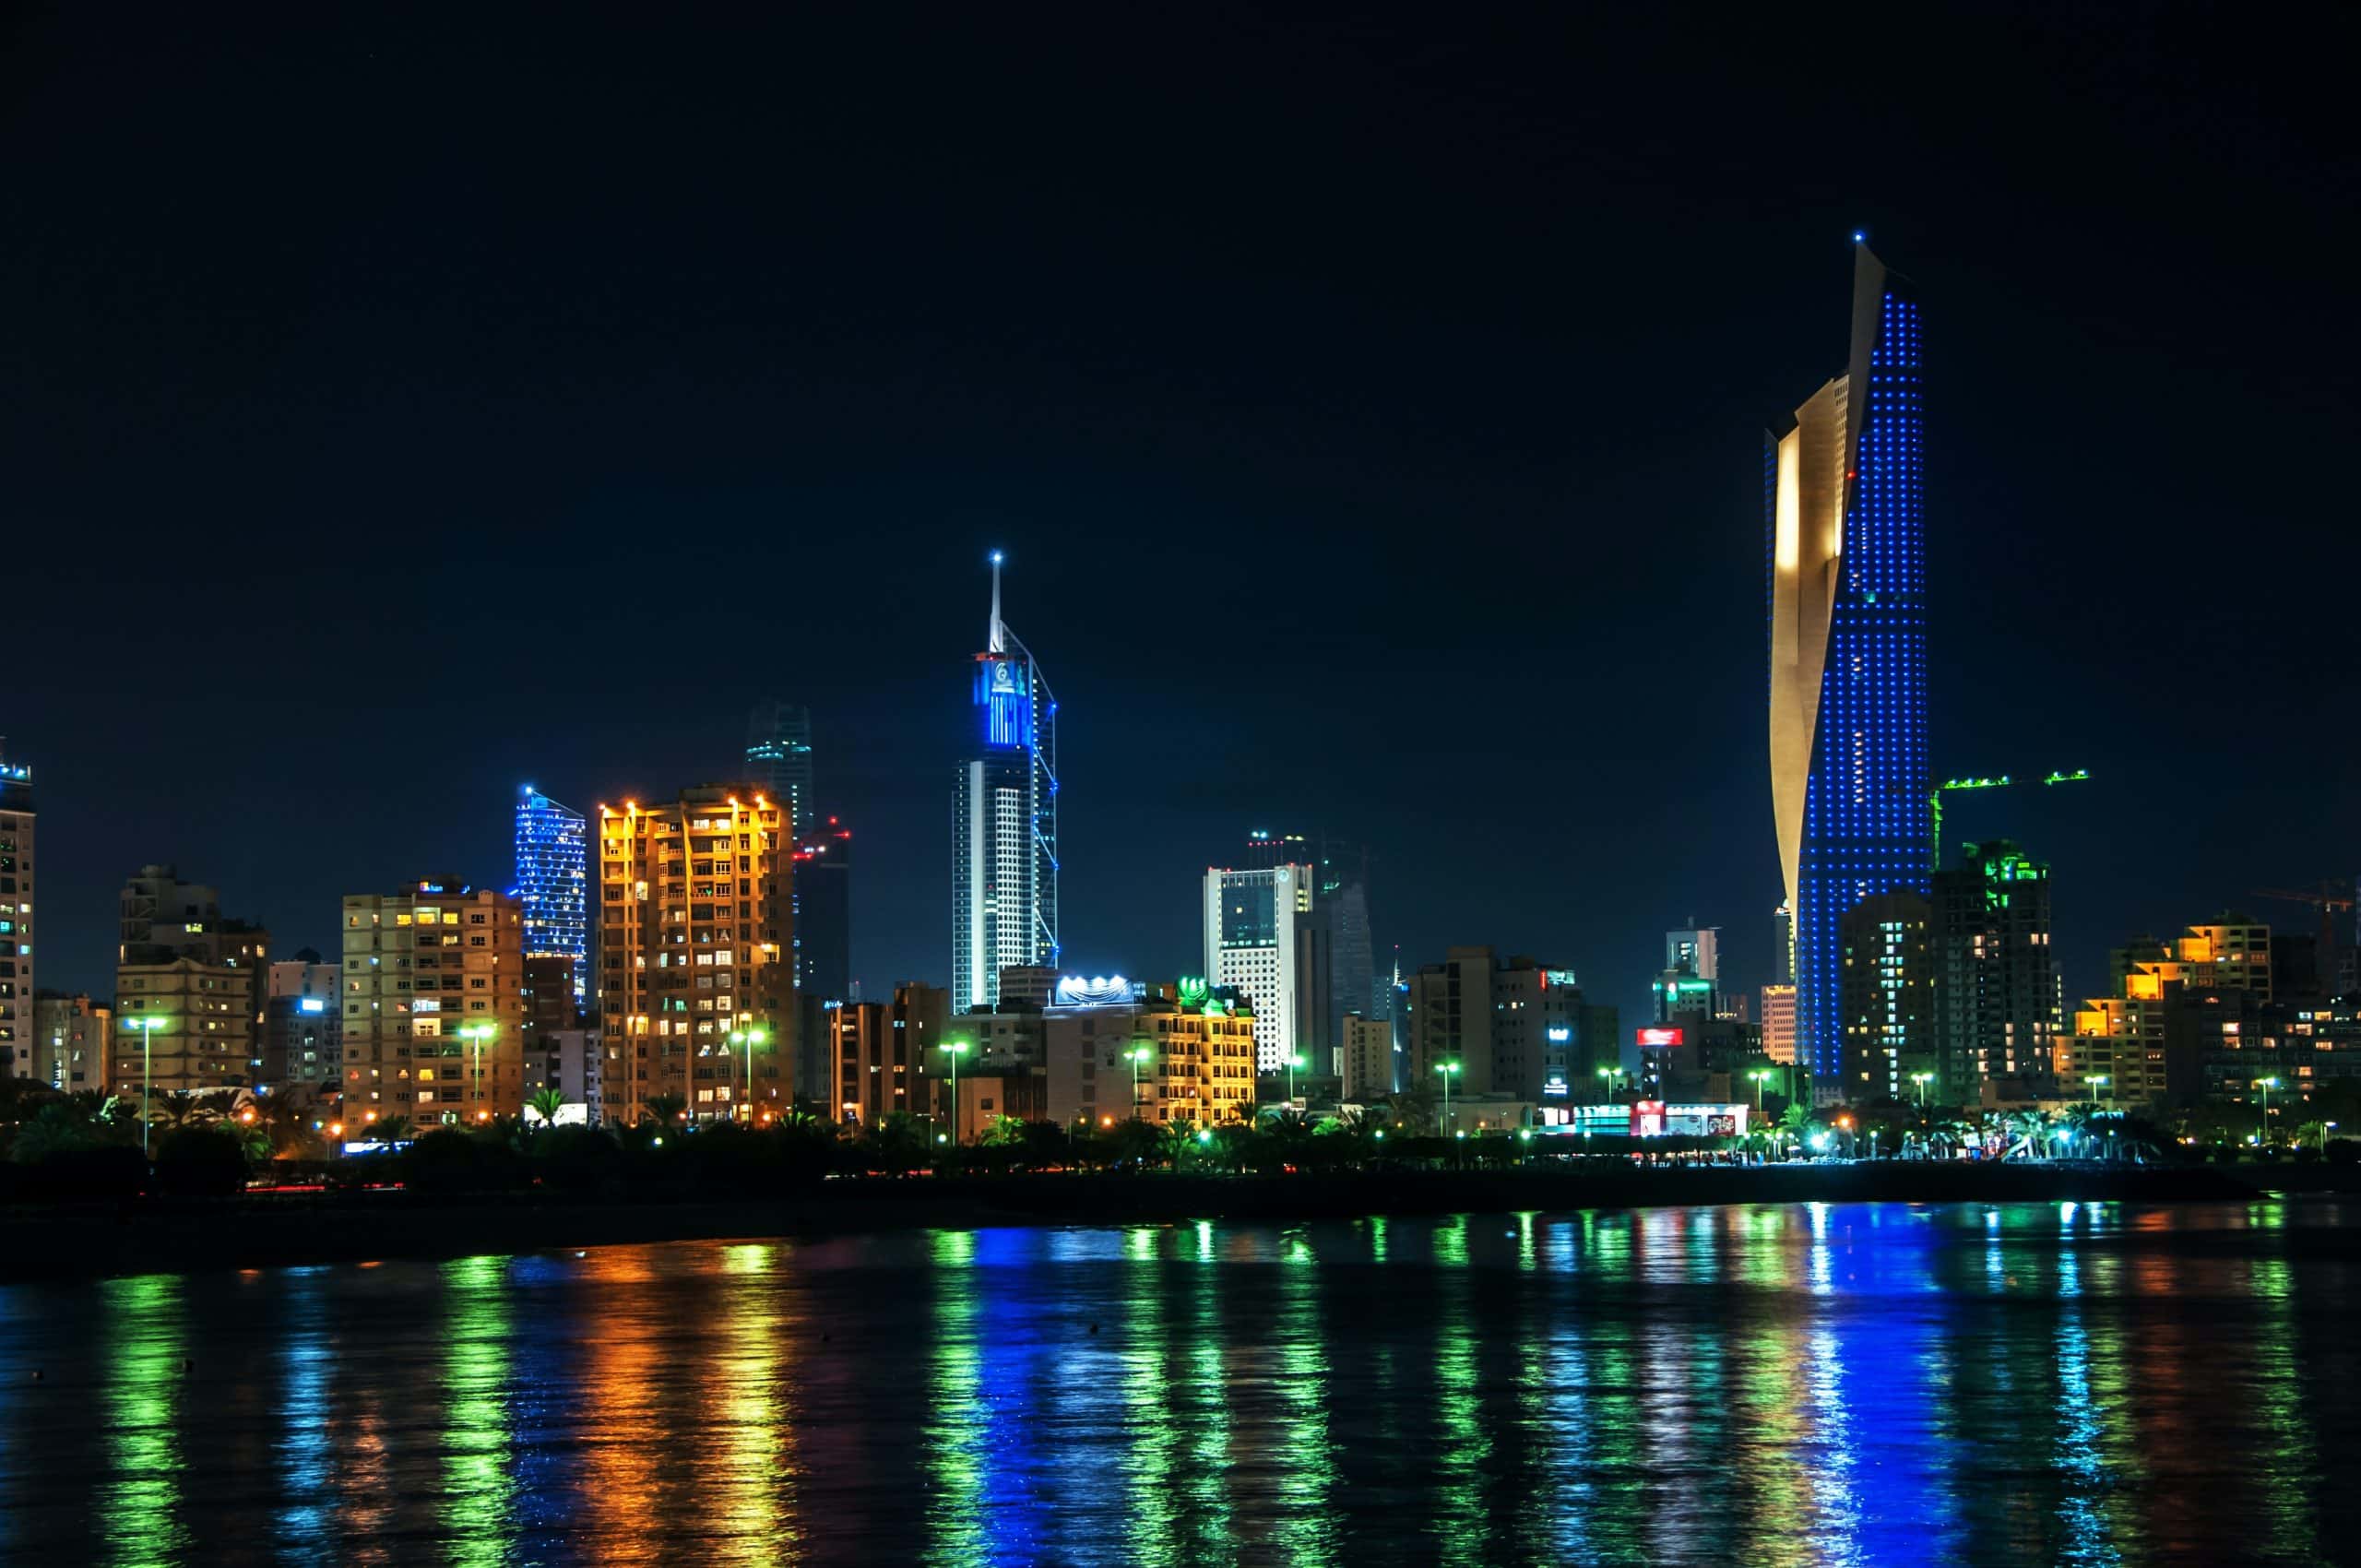 الهيئات التنظيميّة في الكويت تعلن “حظراً مطلقاً” على جميع نشاطات العملات الرقمية